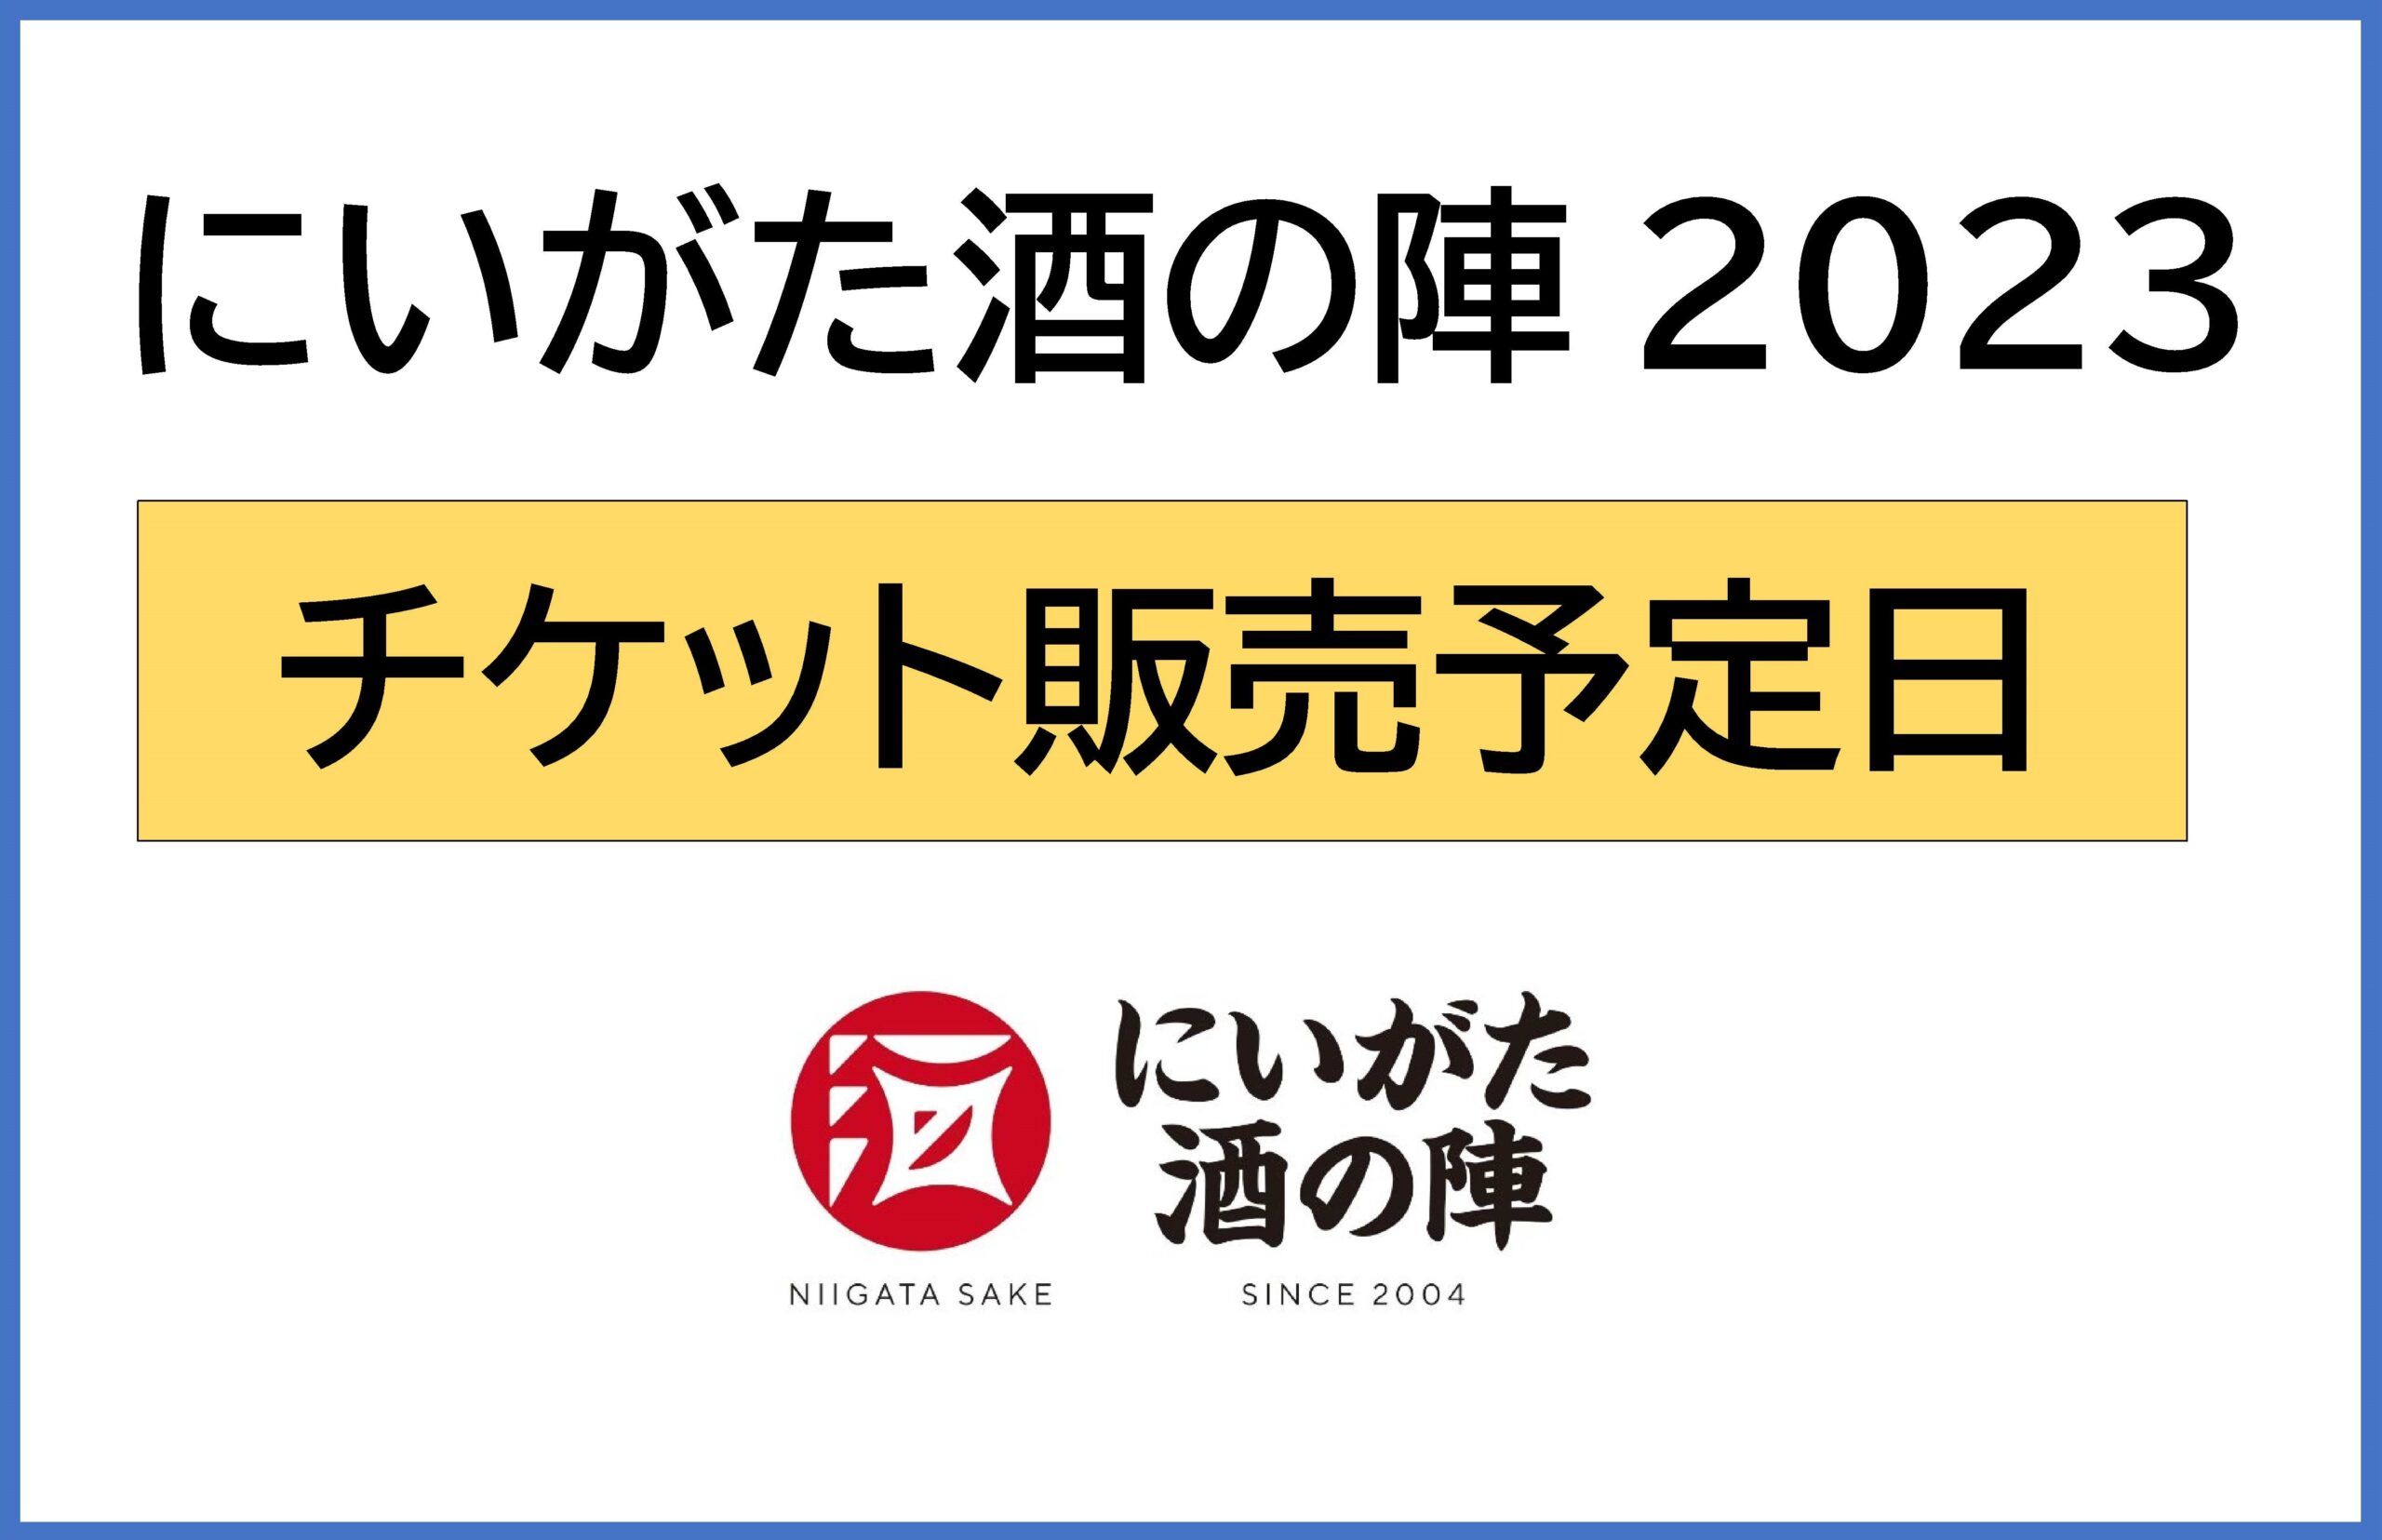 Niigata Sake no Jin2023 Scheduled ticket sales date